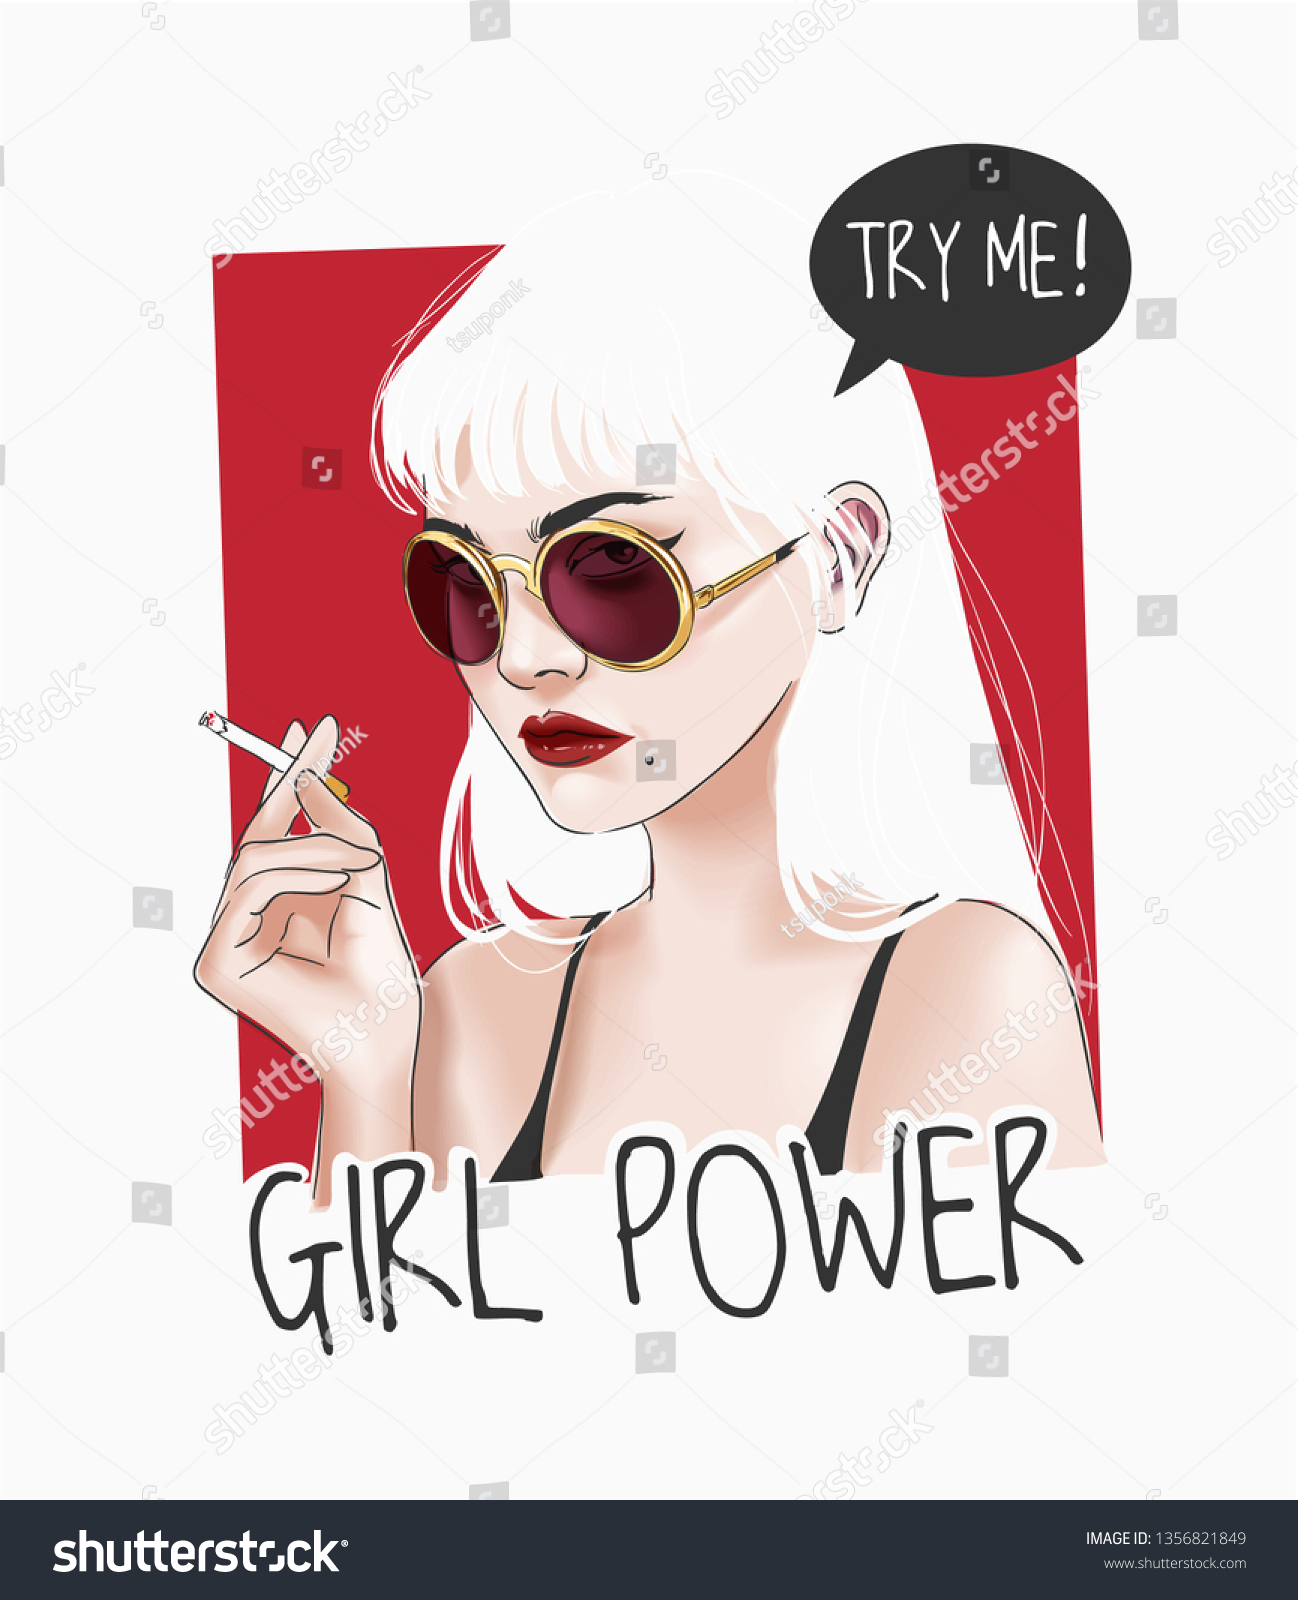 サングラスをかけた女の子がタバコのイラストを持つ女の子の力のスローガン のベクター画像素材 ロイヤリティフリー